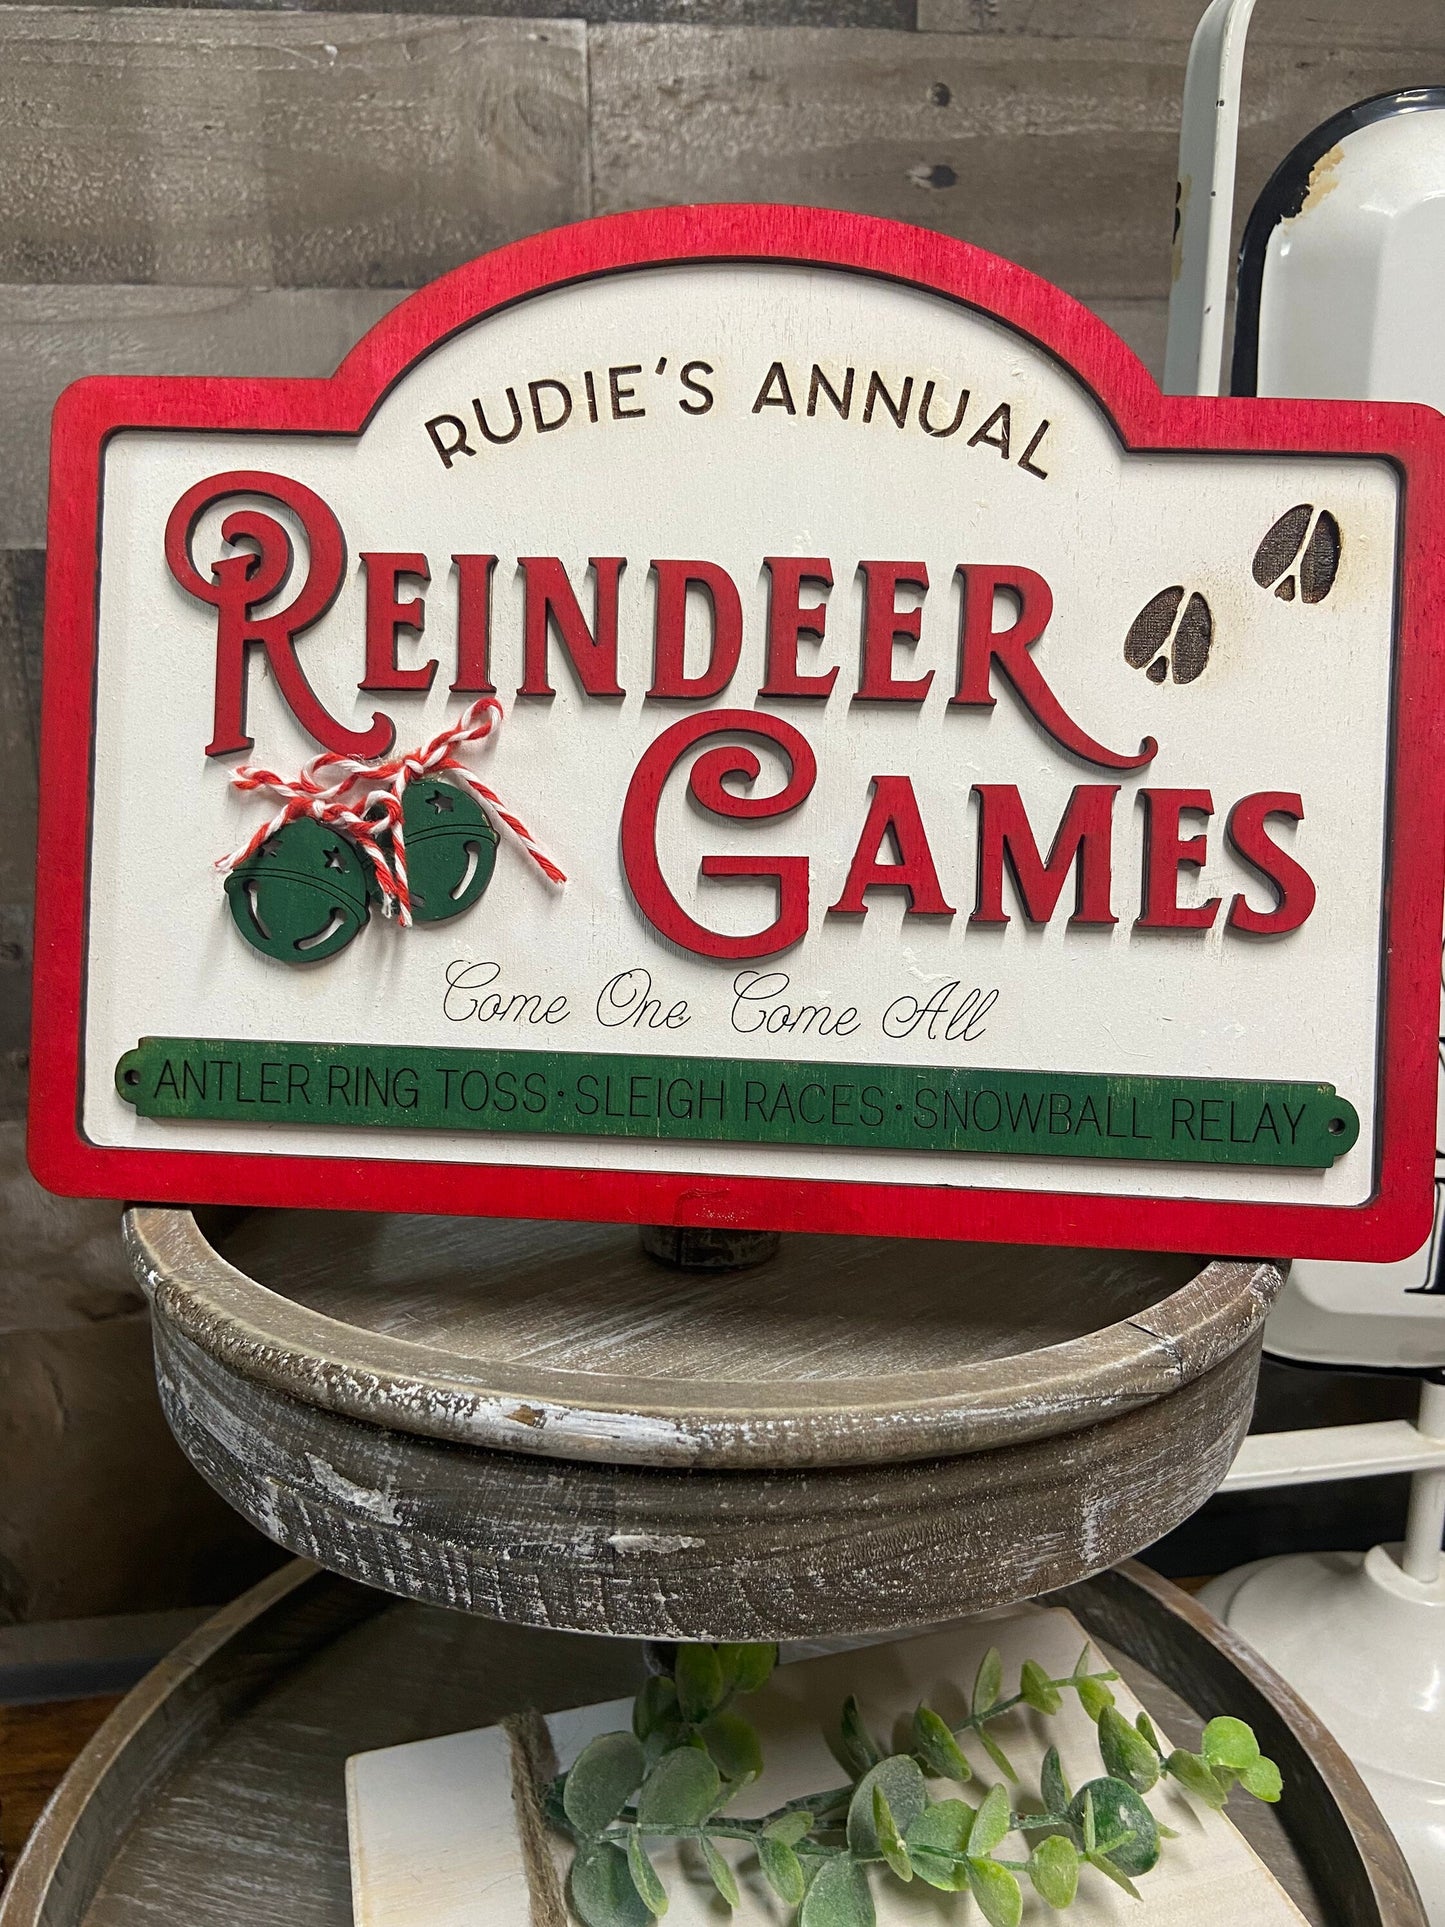 Reindeer games unpainted